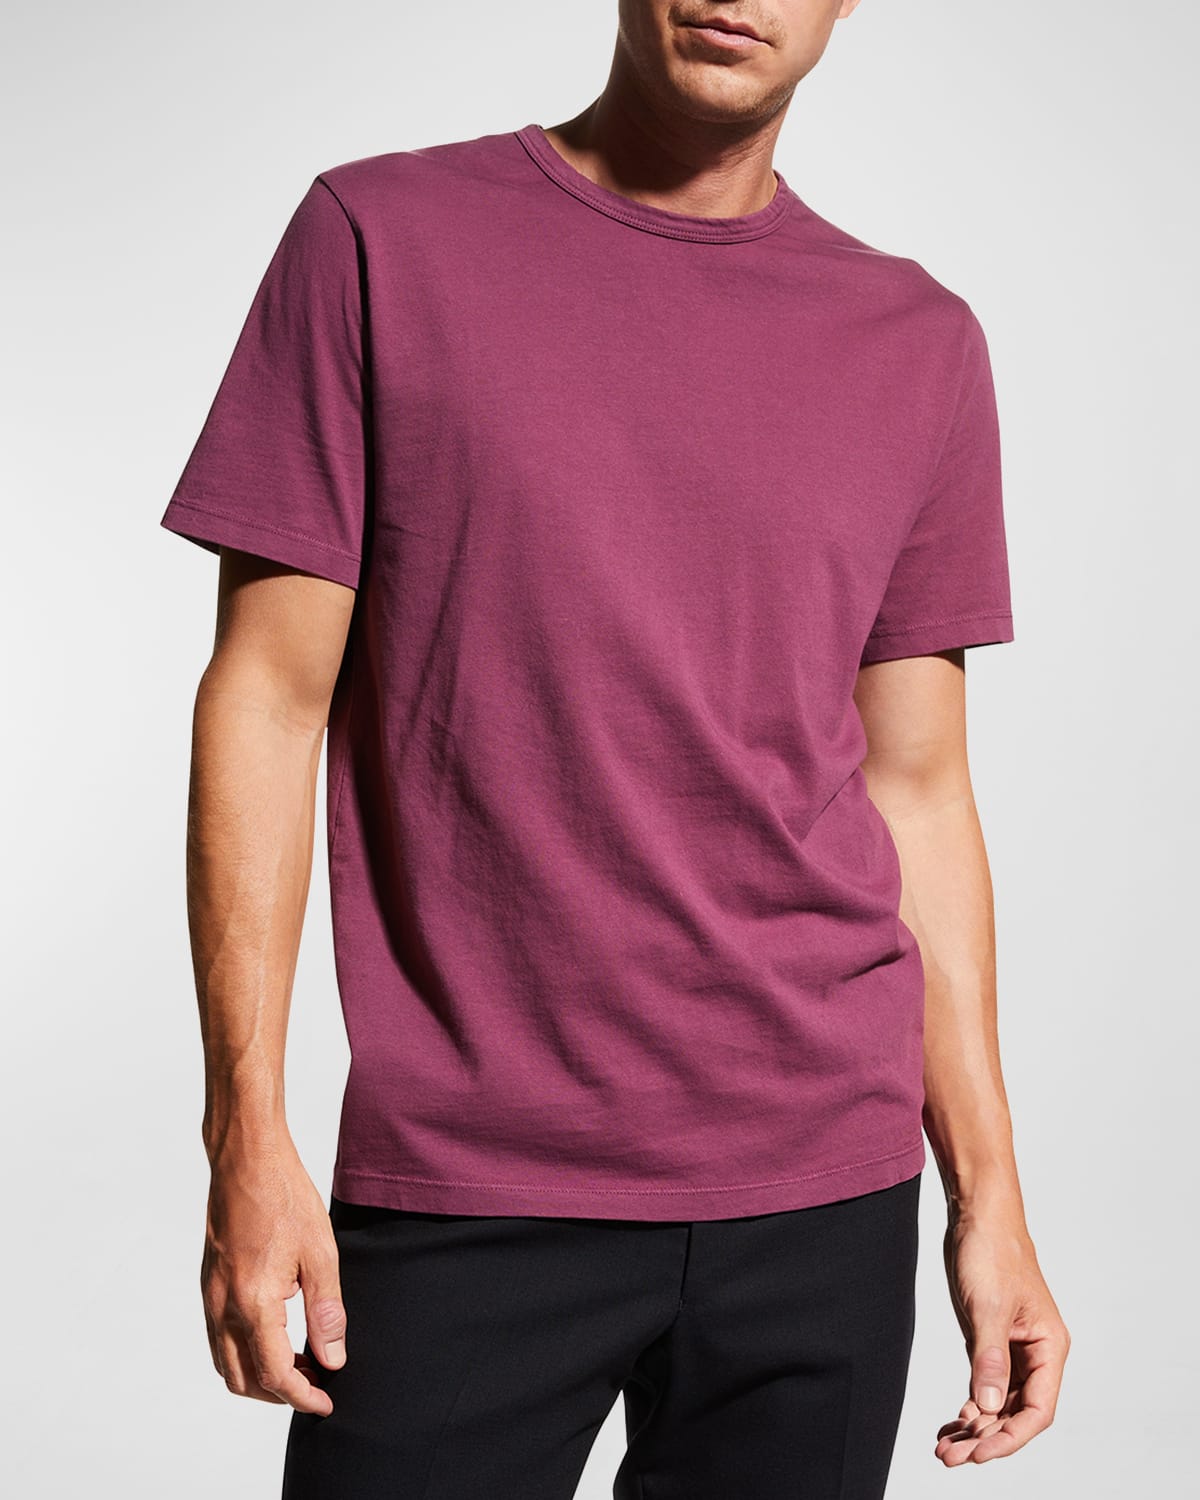 Vince Men's Garment-Dyed Crewneck T-Shirt